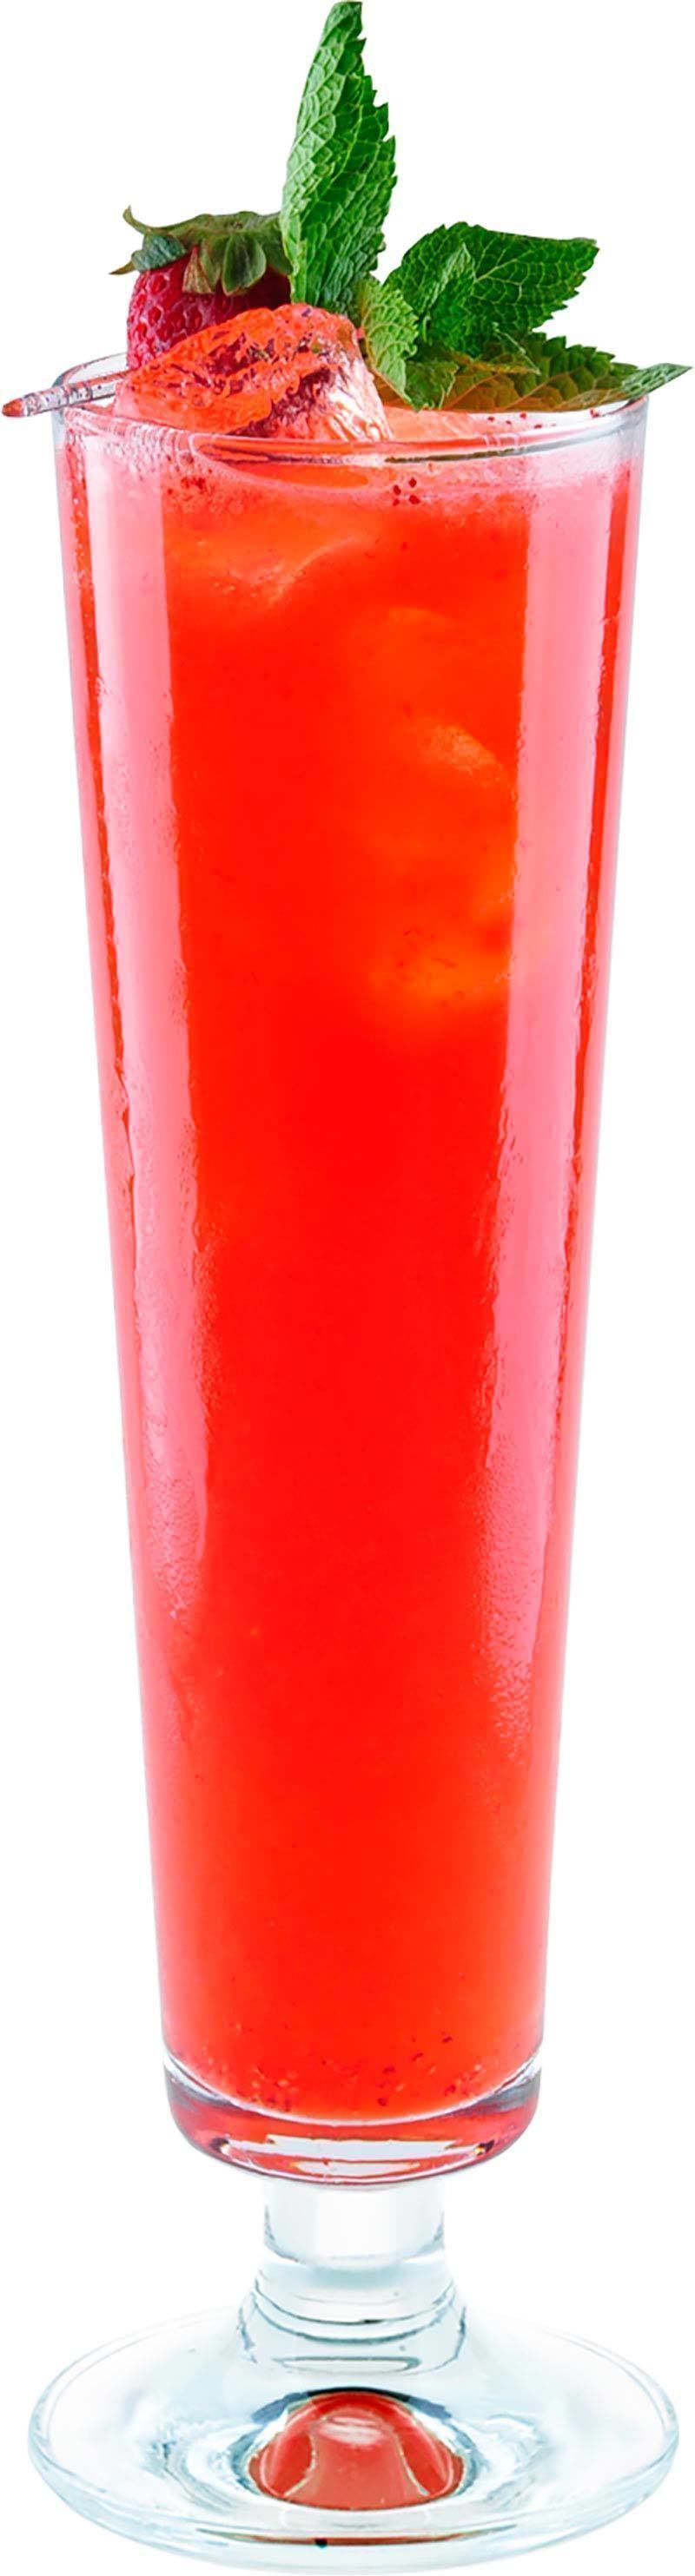 Comment préparer le cocktail Sling fraise